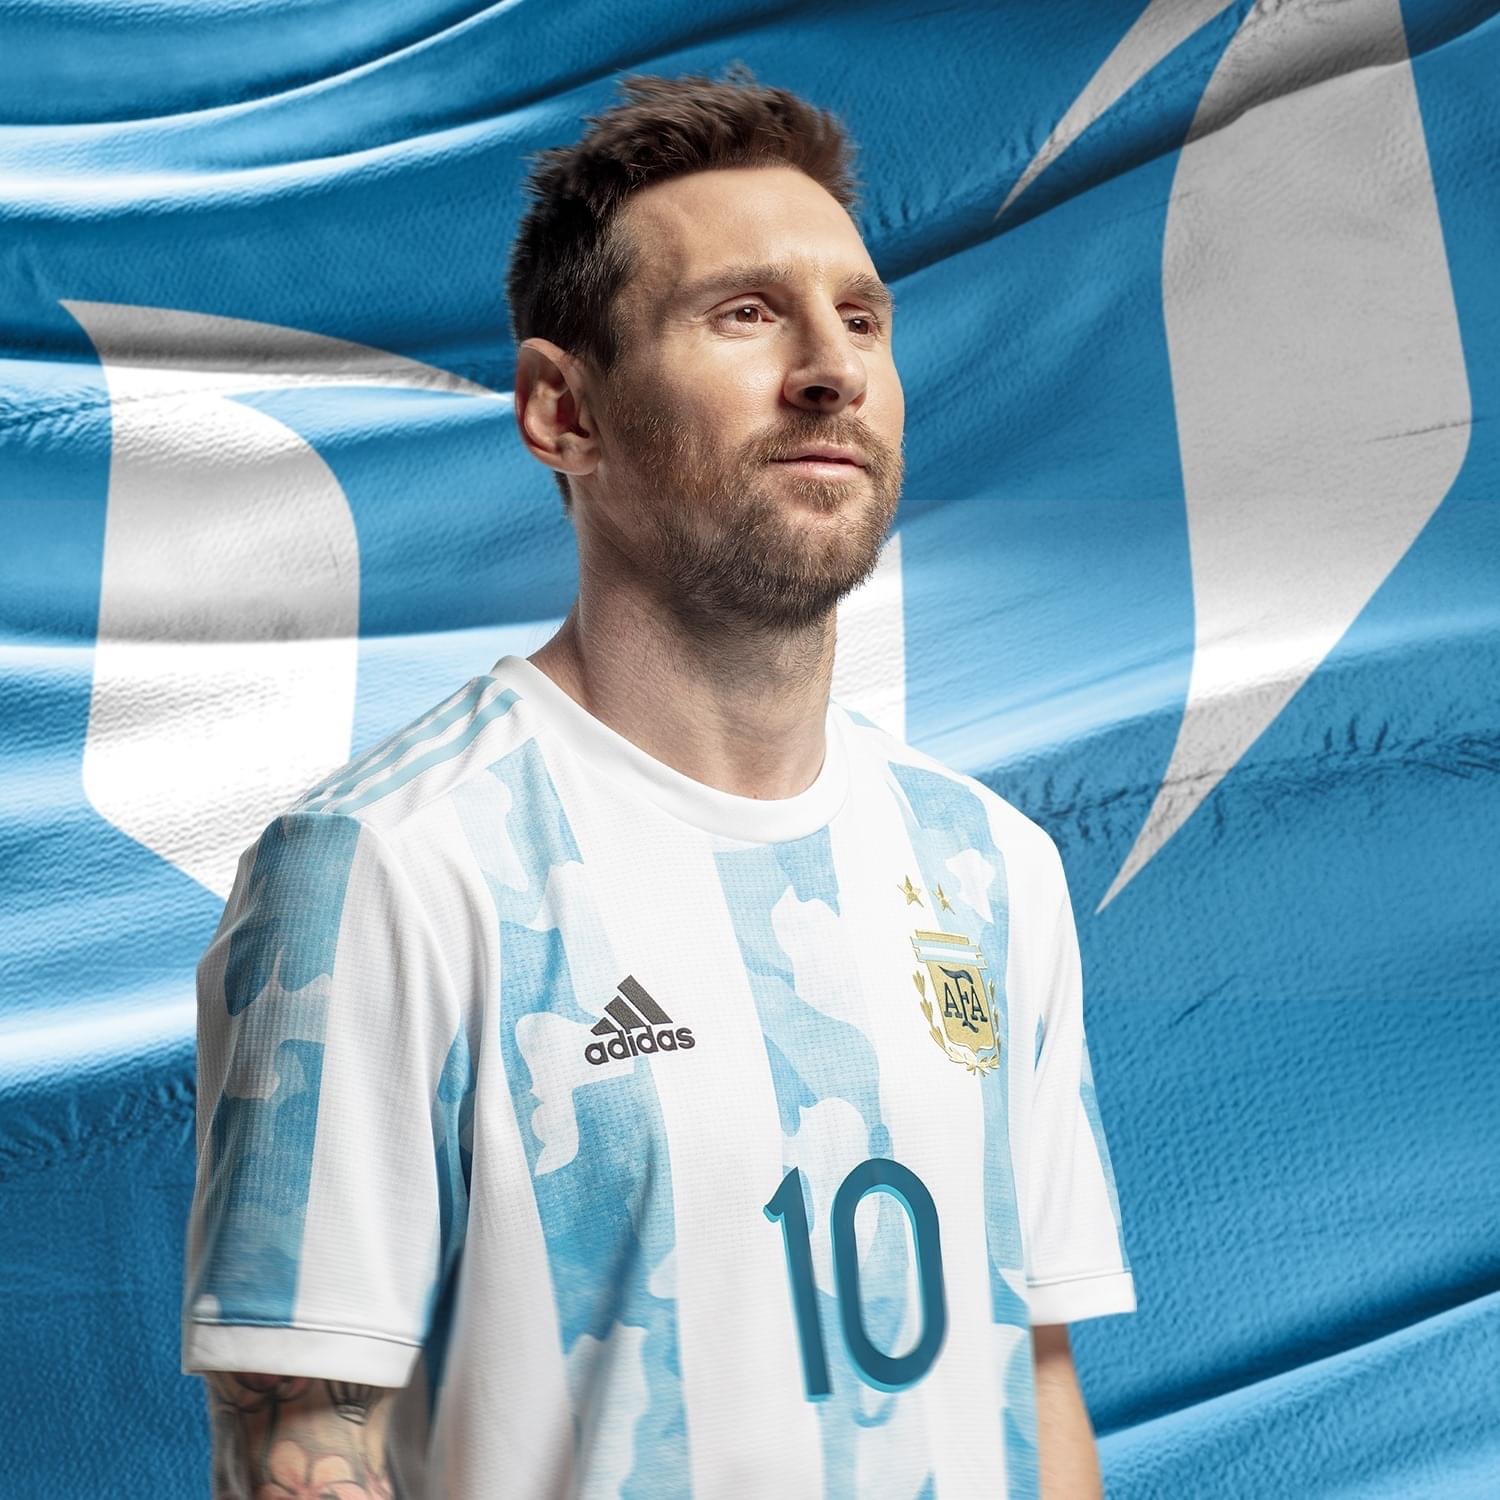 Hãy xem ảnh Messi đẹp lung linh này để chiêm ngưỡng vẻ đẹp của ngôi sao bóng đá hàng đầu thế giới. Từ mái tóc xoăn nhẹ đến nụ cười tươi rói, Messi luôn khiến người hâm mộ phải đắm đuối.